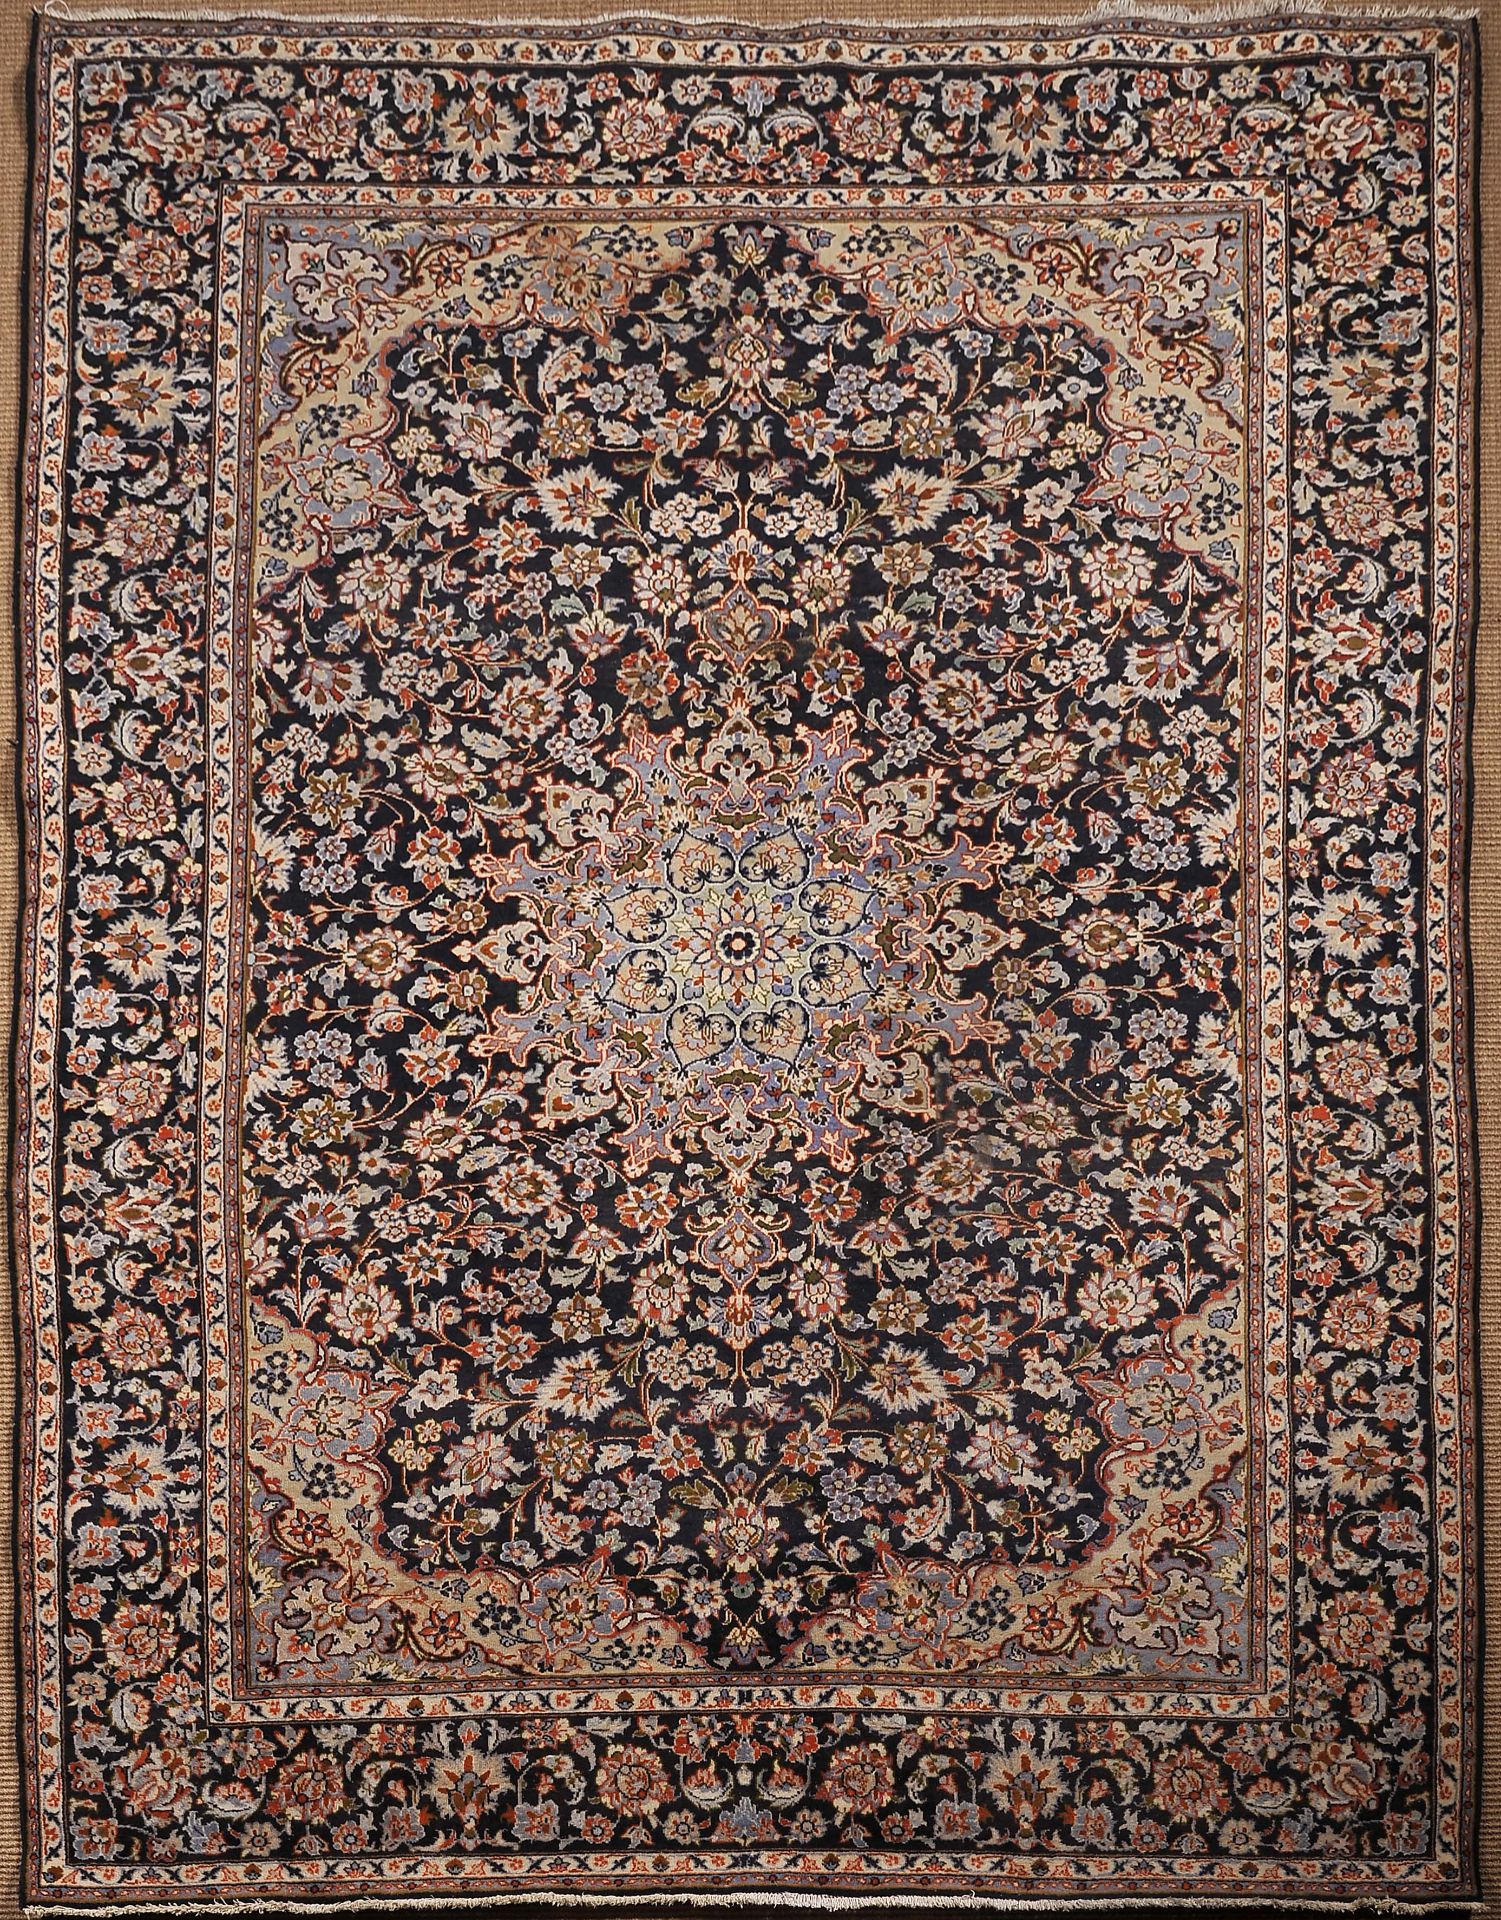 A carpet